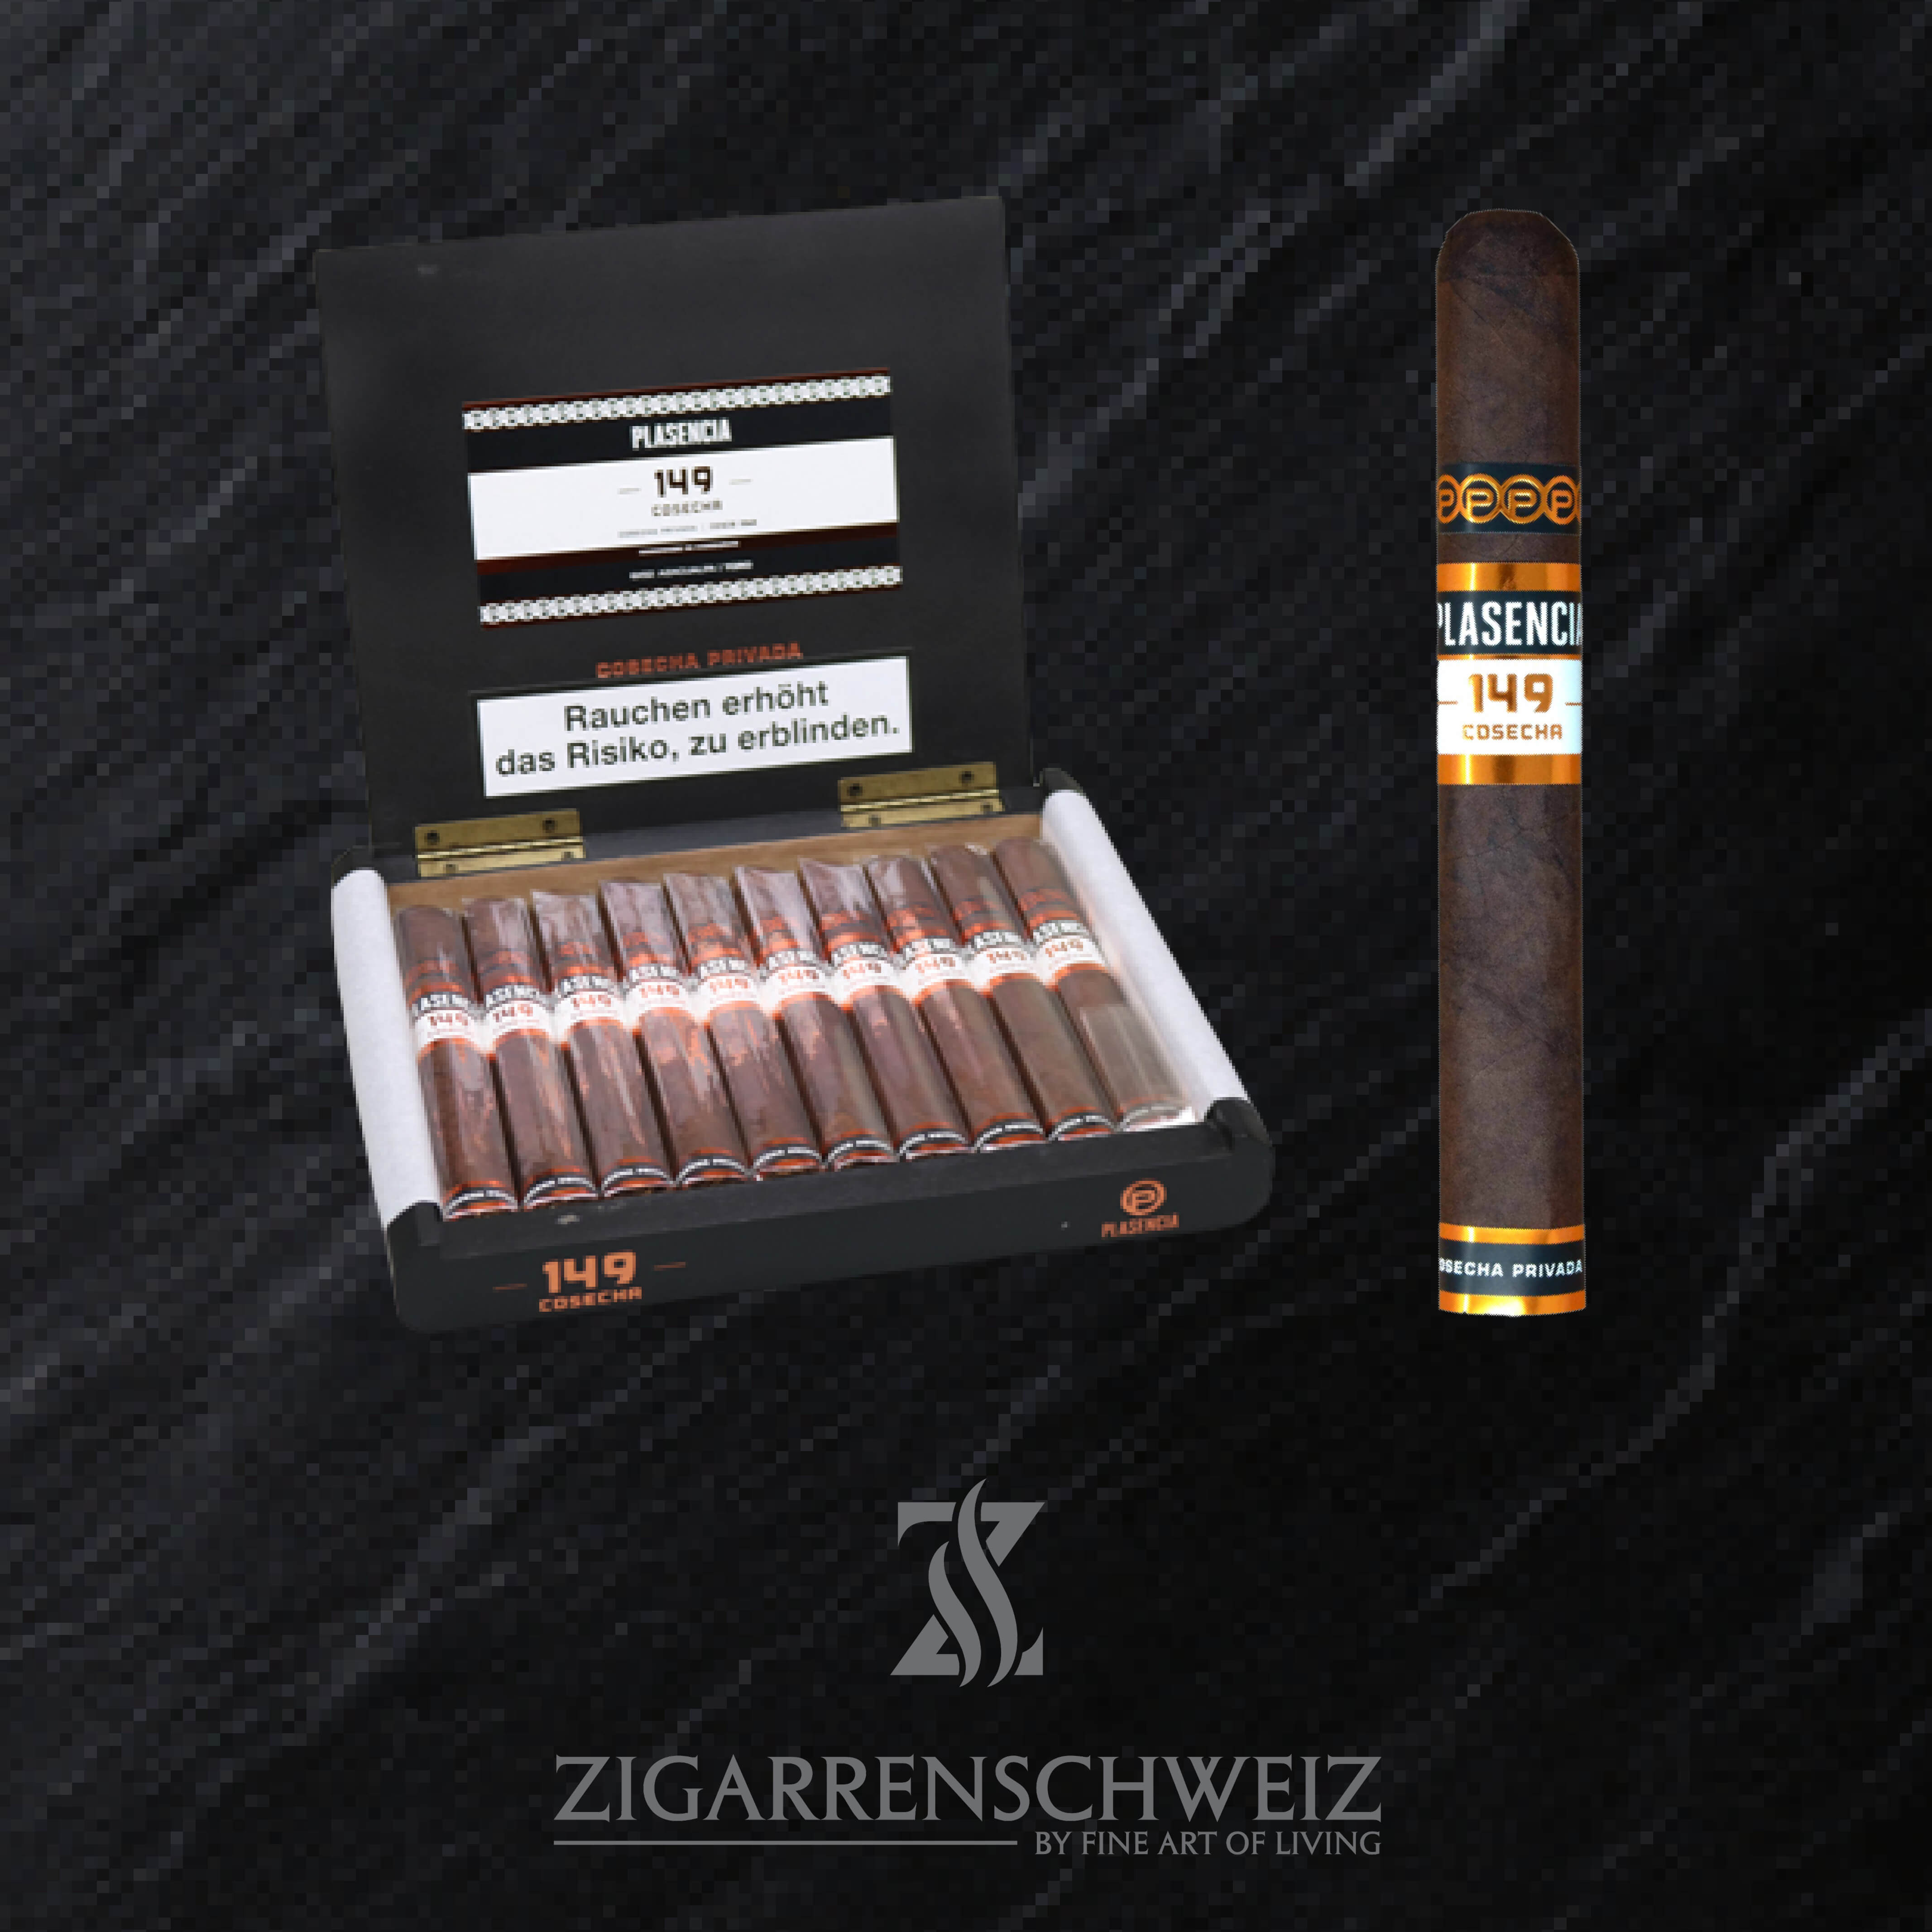 offene Kiste Plasencia Cosecha 149 Azacualpa Zigarren im Toro Format